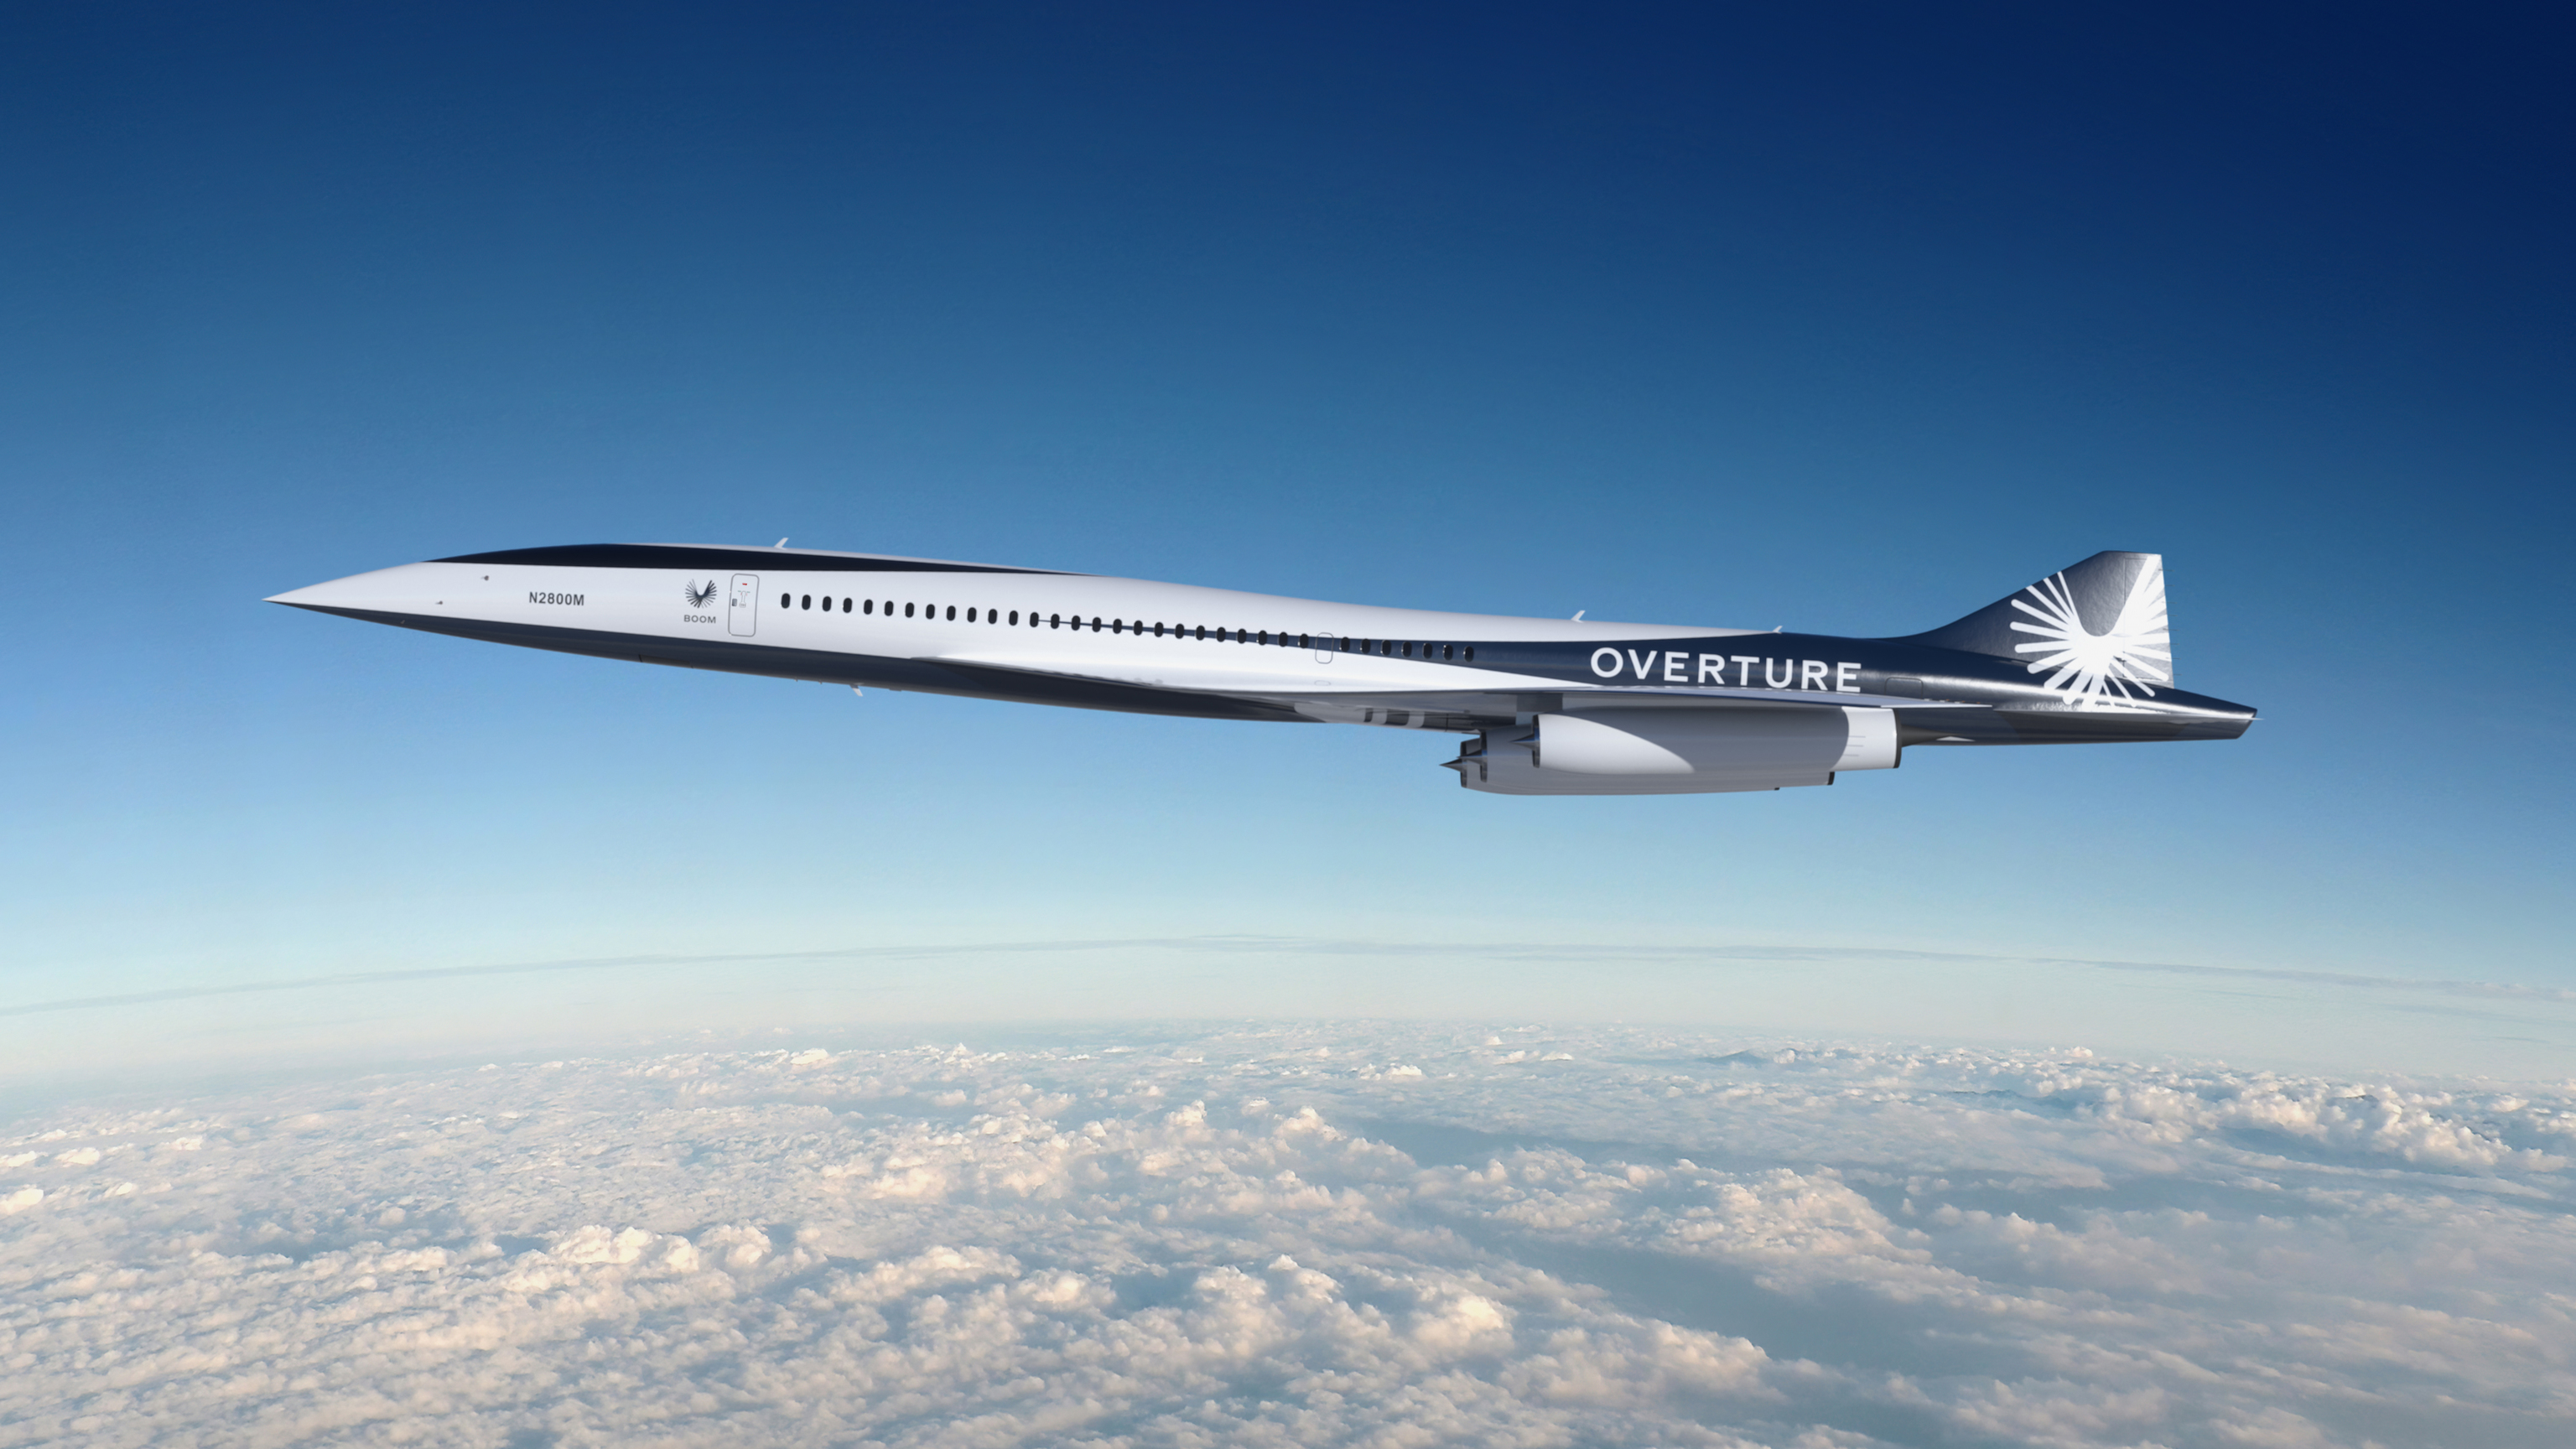 Vuelve el avión supersónico: American Airlines compra 20 naves que duplican la velocidad de vuelo actual